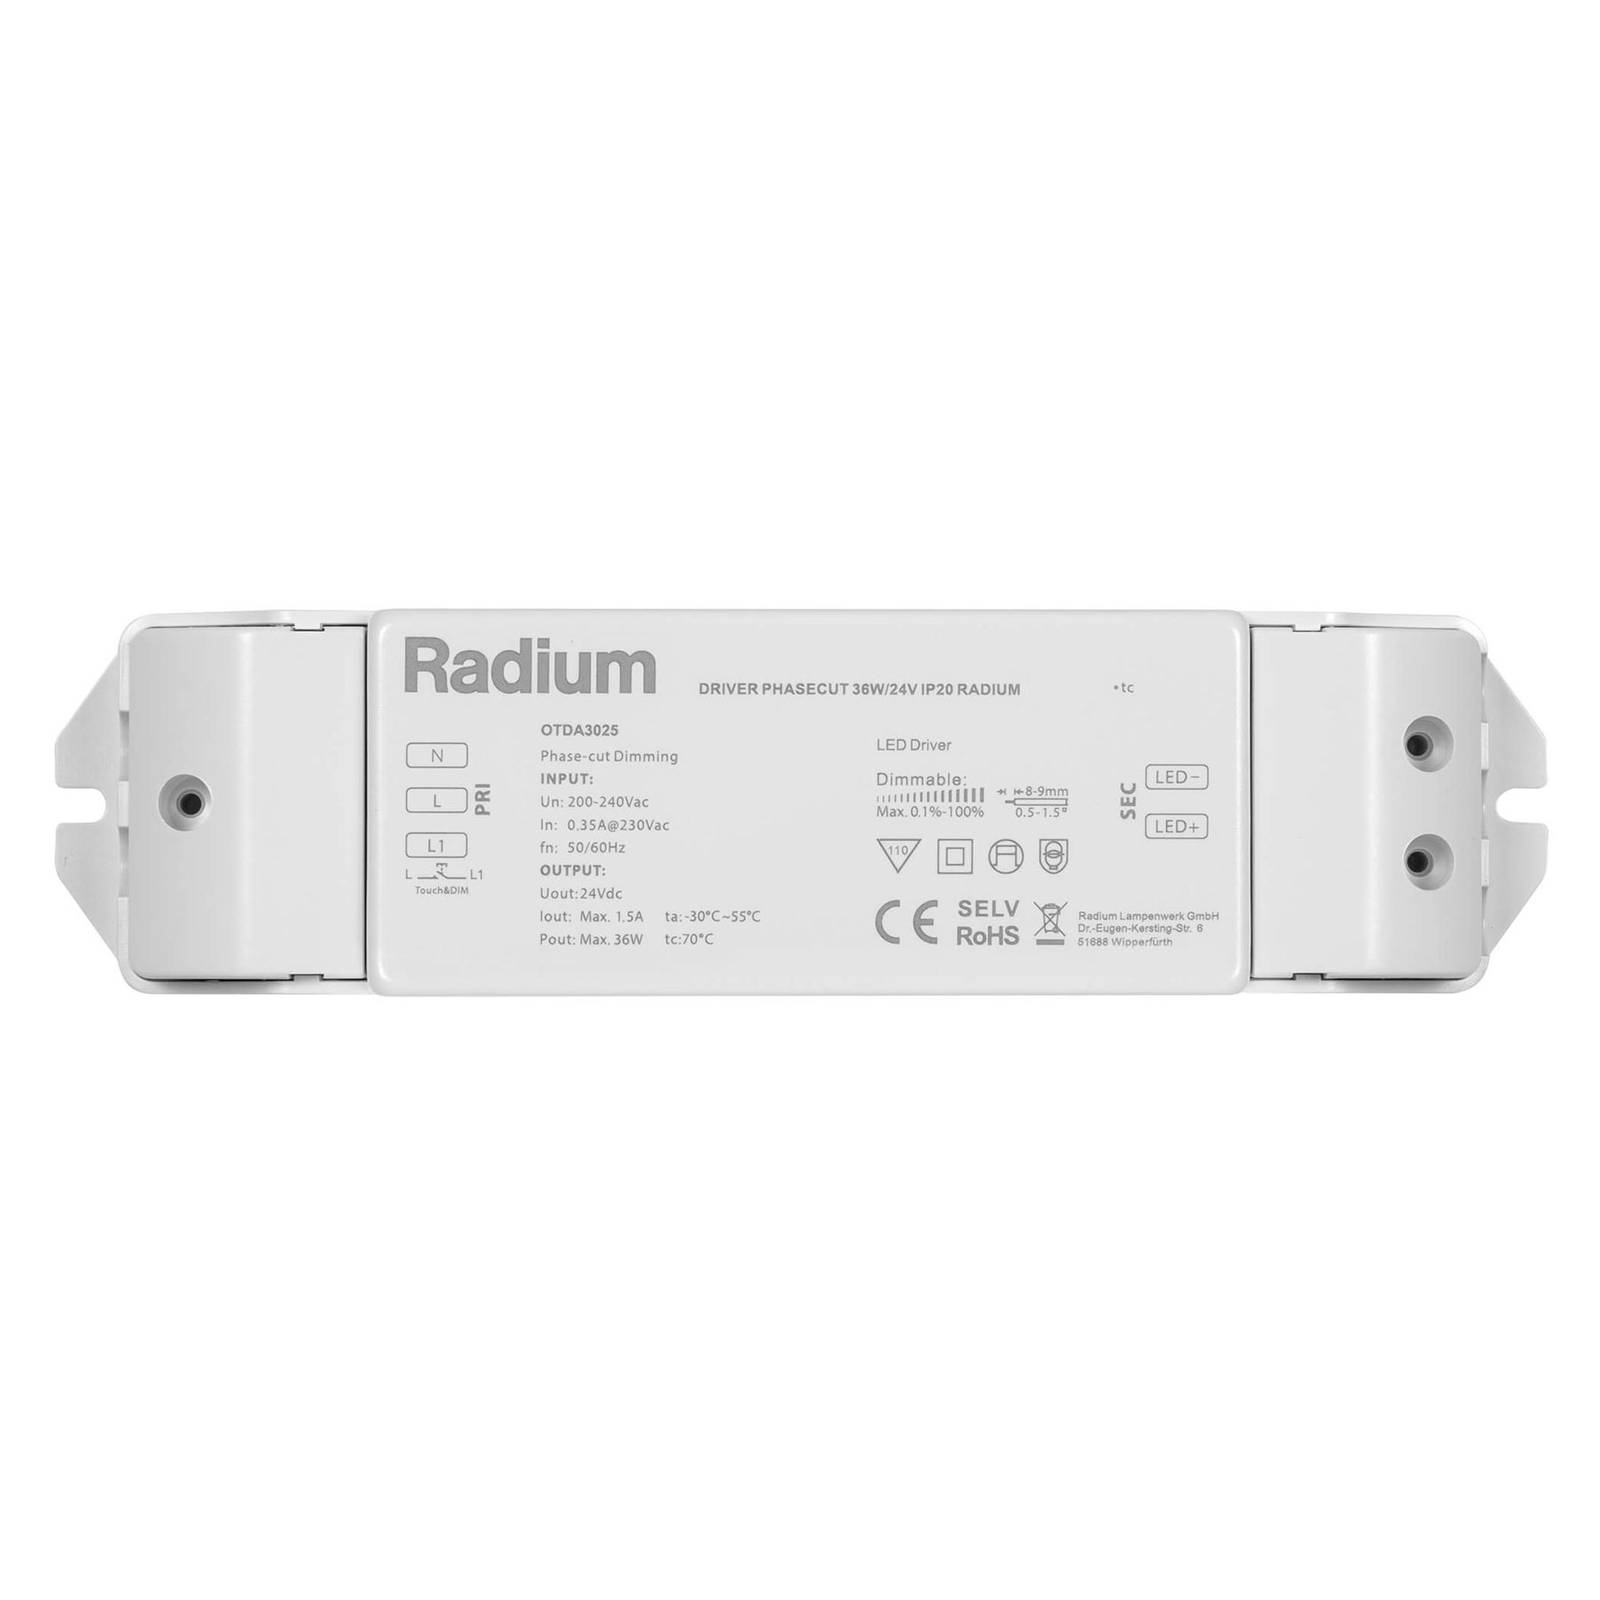 Pferdekaemper LED-Netzteil Radium OTDA 24V-DC, 36 W